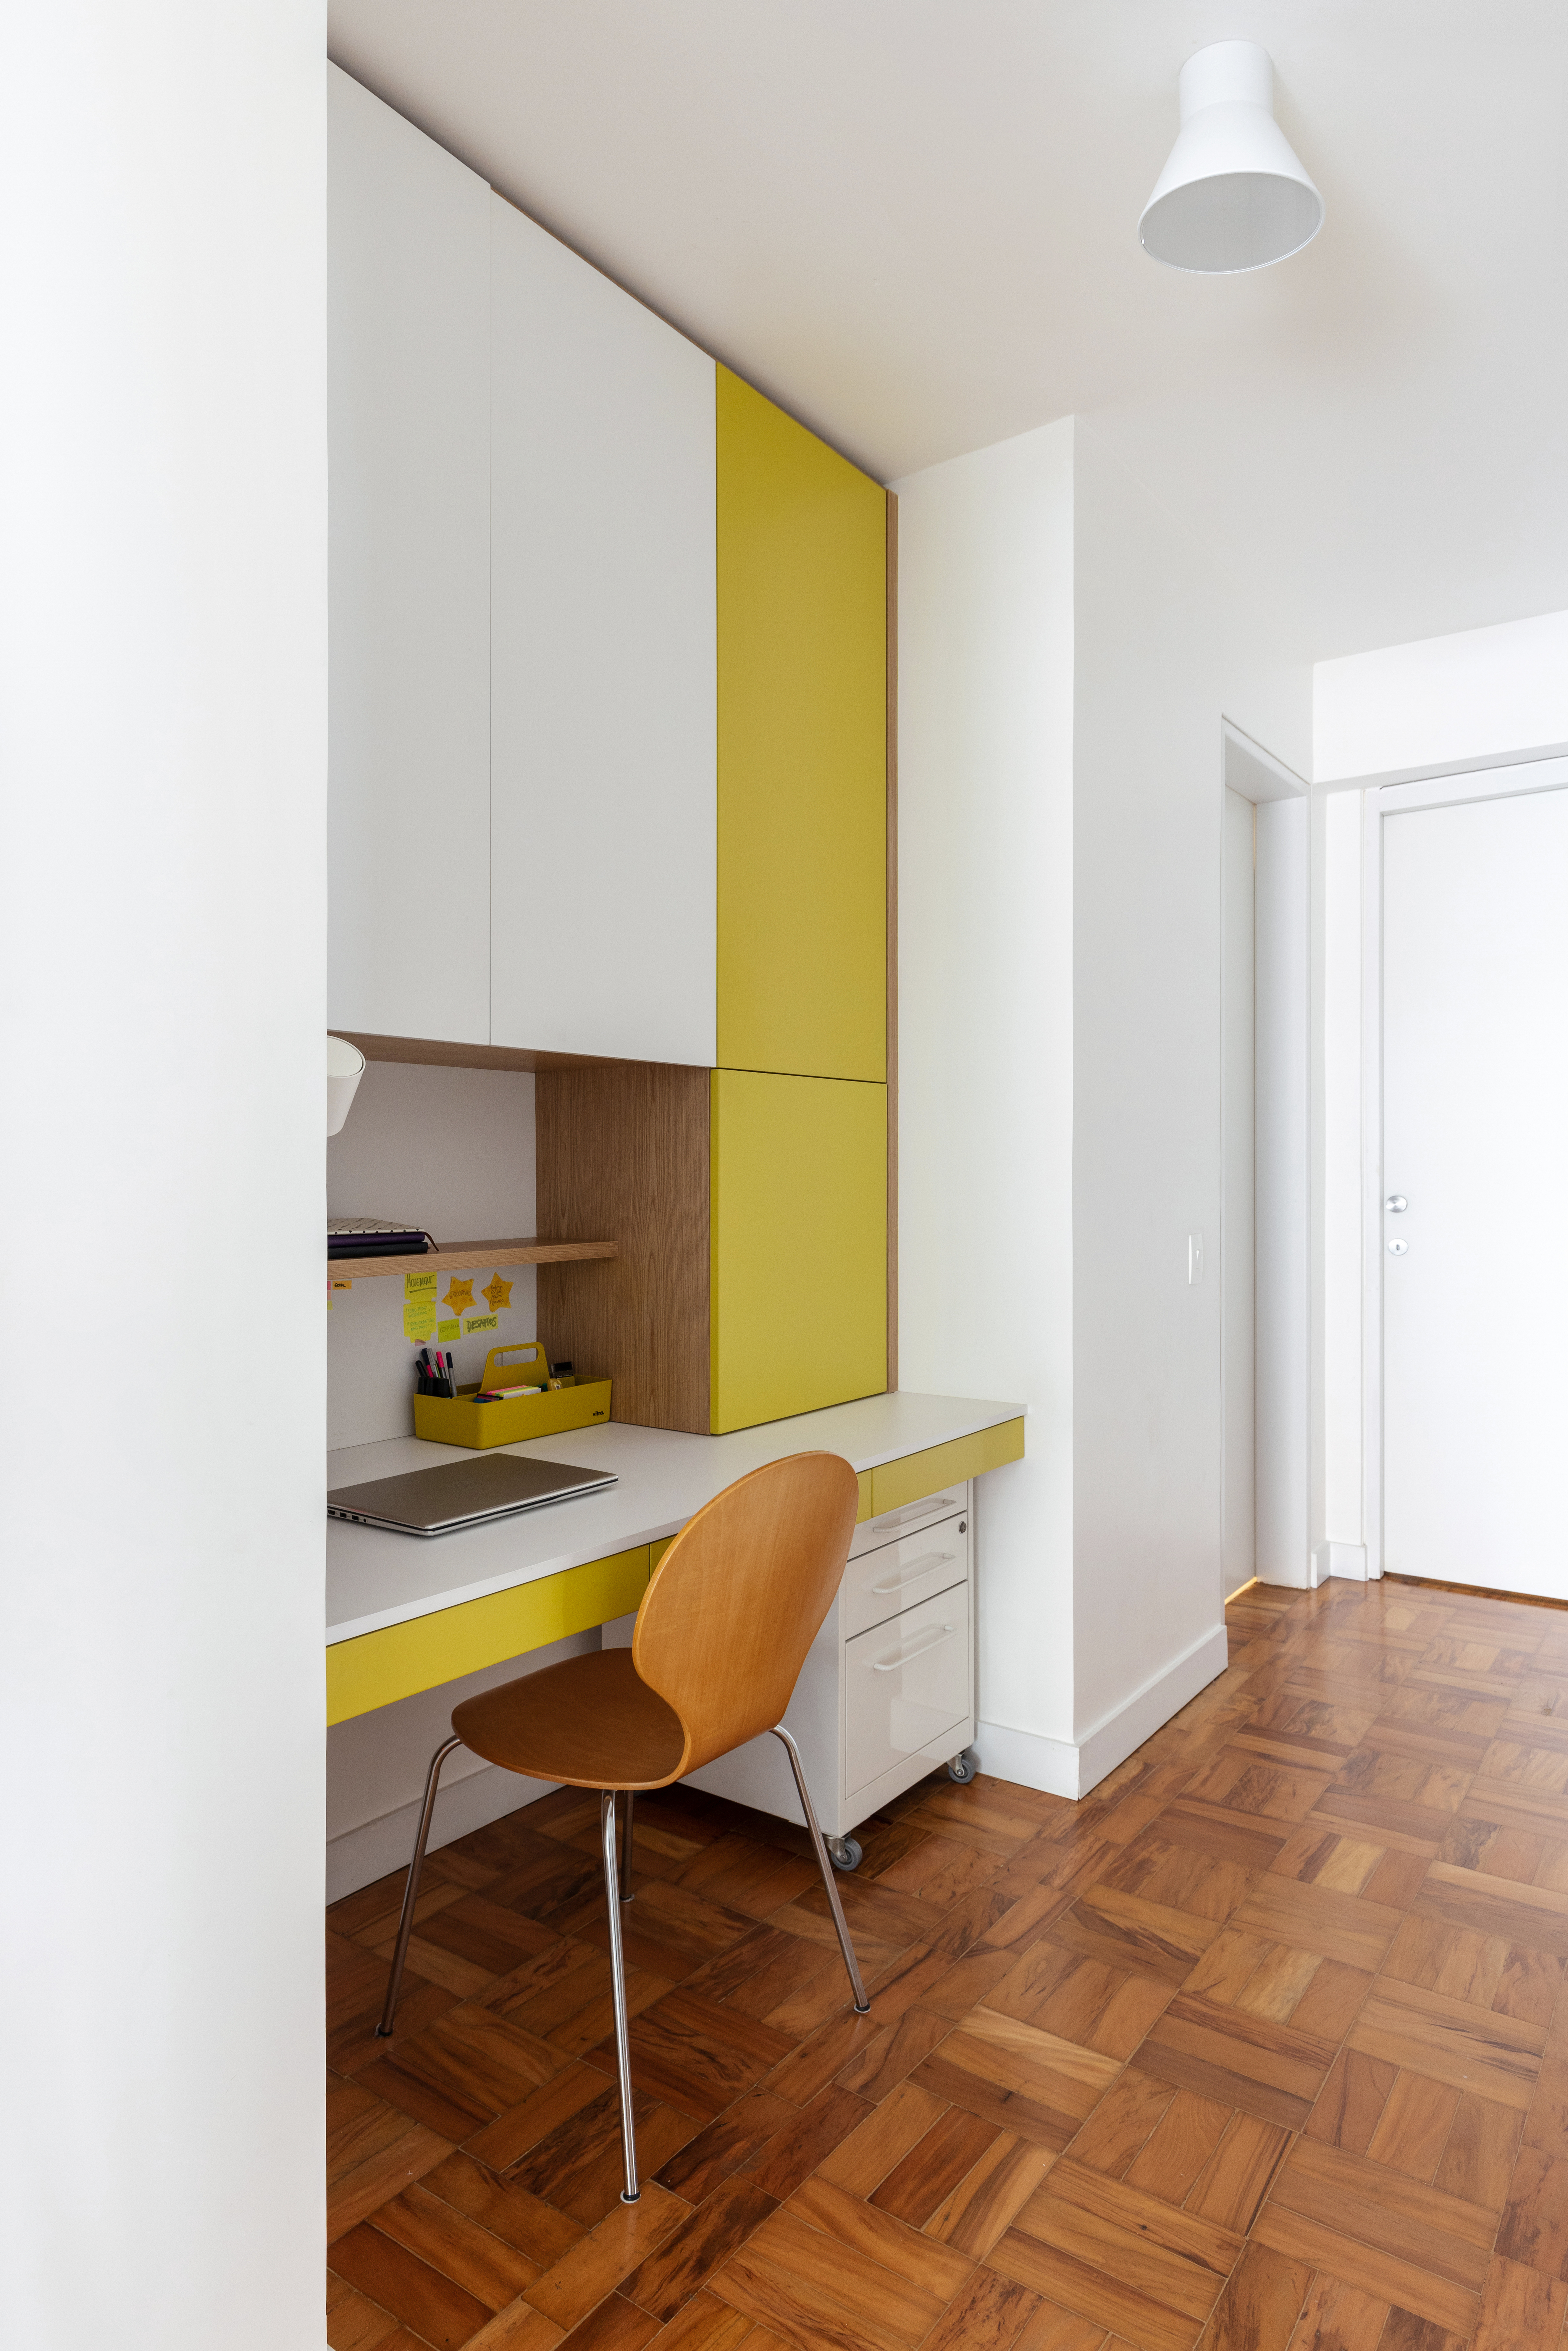 Com paleta branca, apê de 240 m² tem porta de correr inspirada em biombos. Projeto de Lucia Manzano. Na foto, home office, marcenaria branca e amarela.